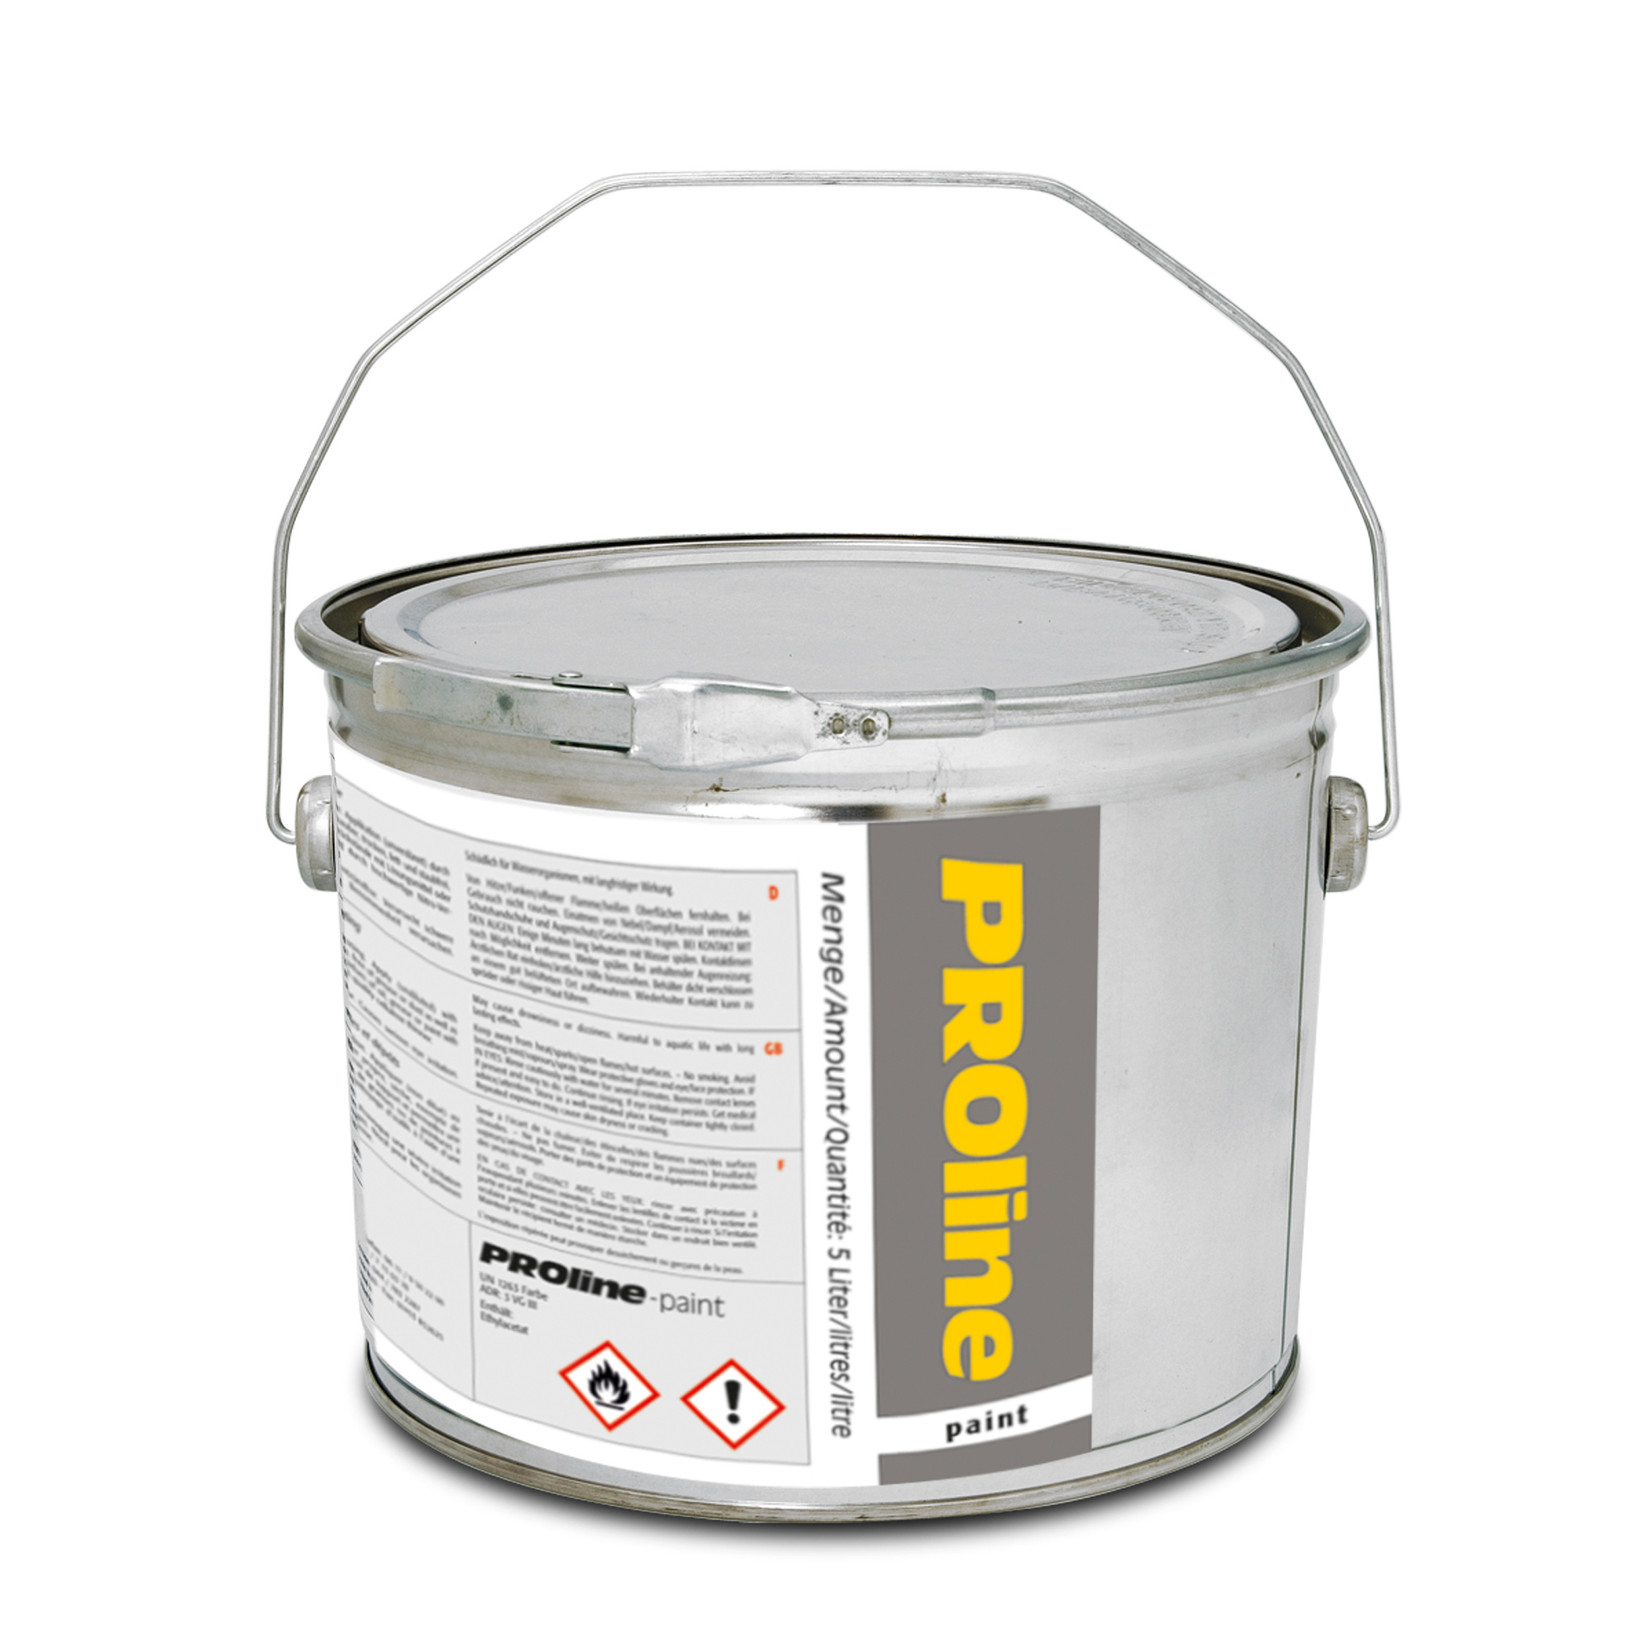 PROline-paint markeerverf voor bedrijfsvloeren - 5 liter - zilvergrijs